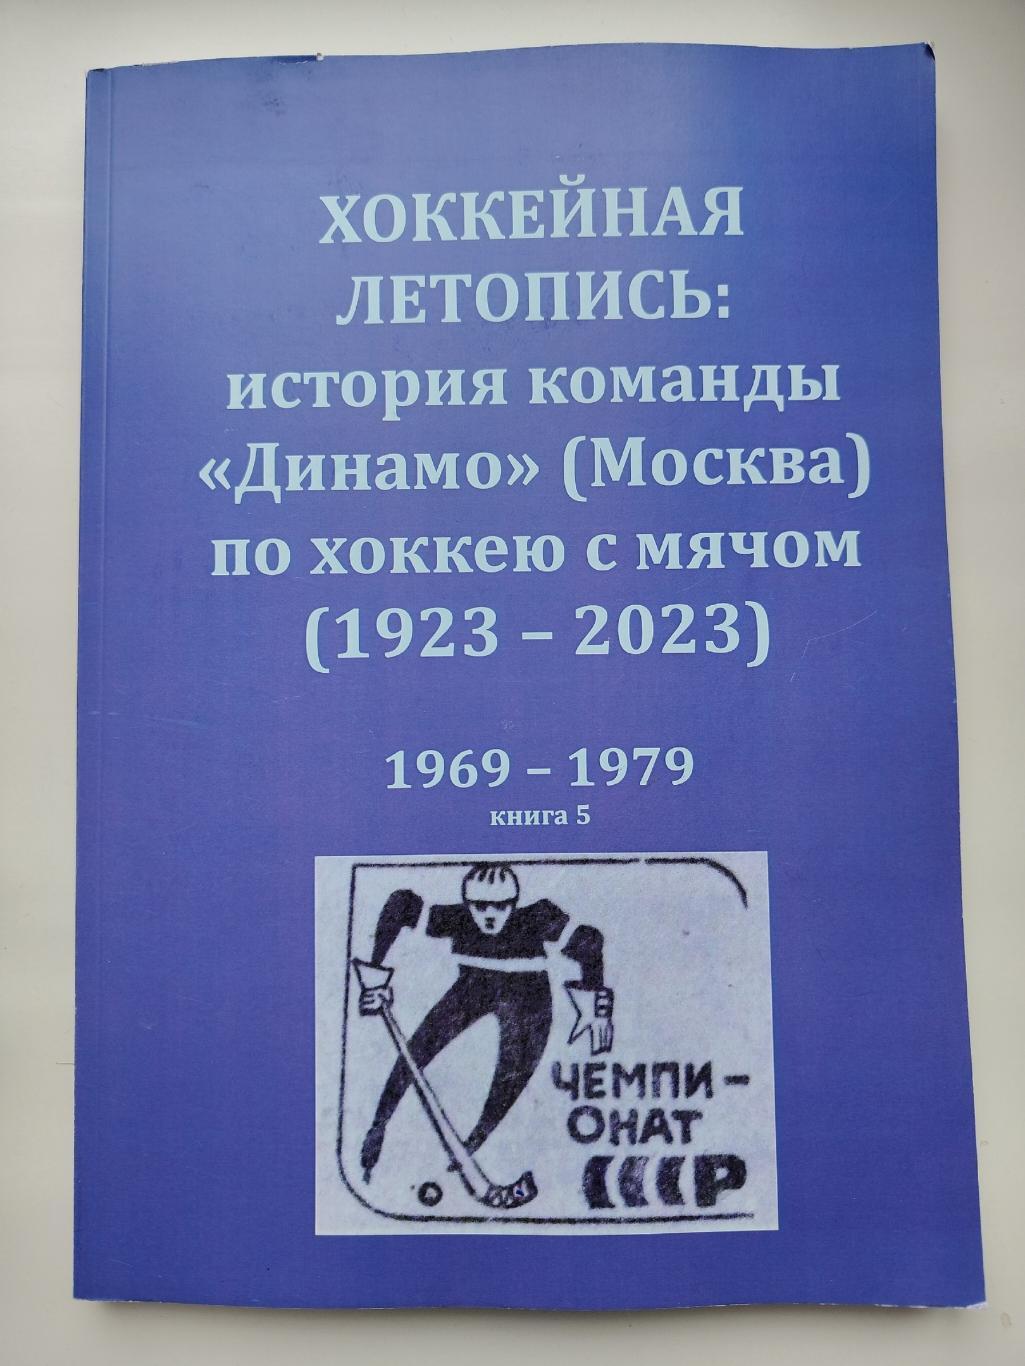 Хоккей с мячом. Хоккейная летопись: история команды Динамо Москва 1969-1979